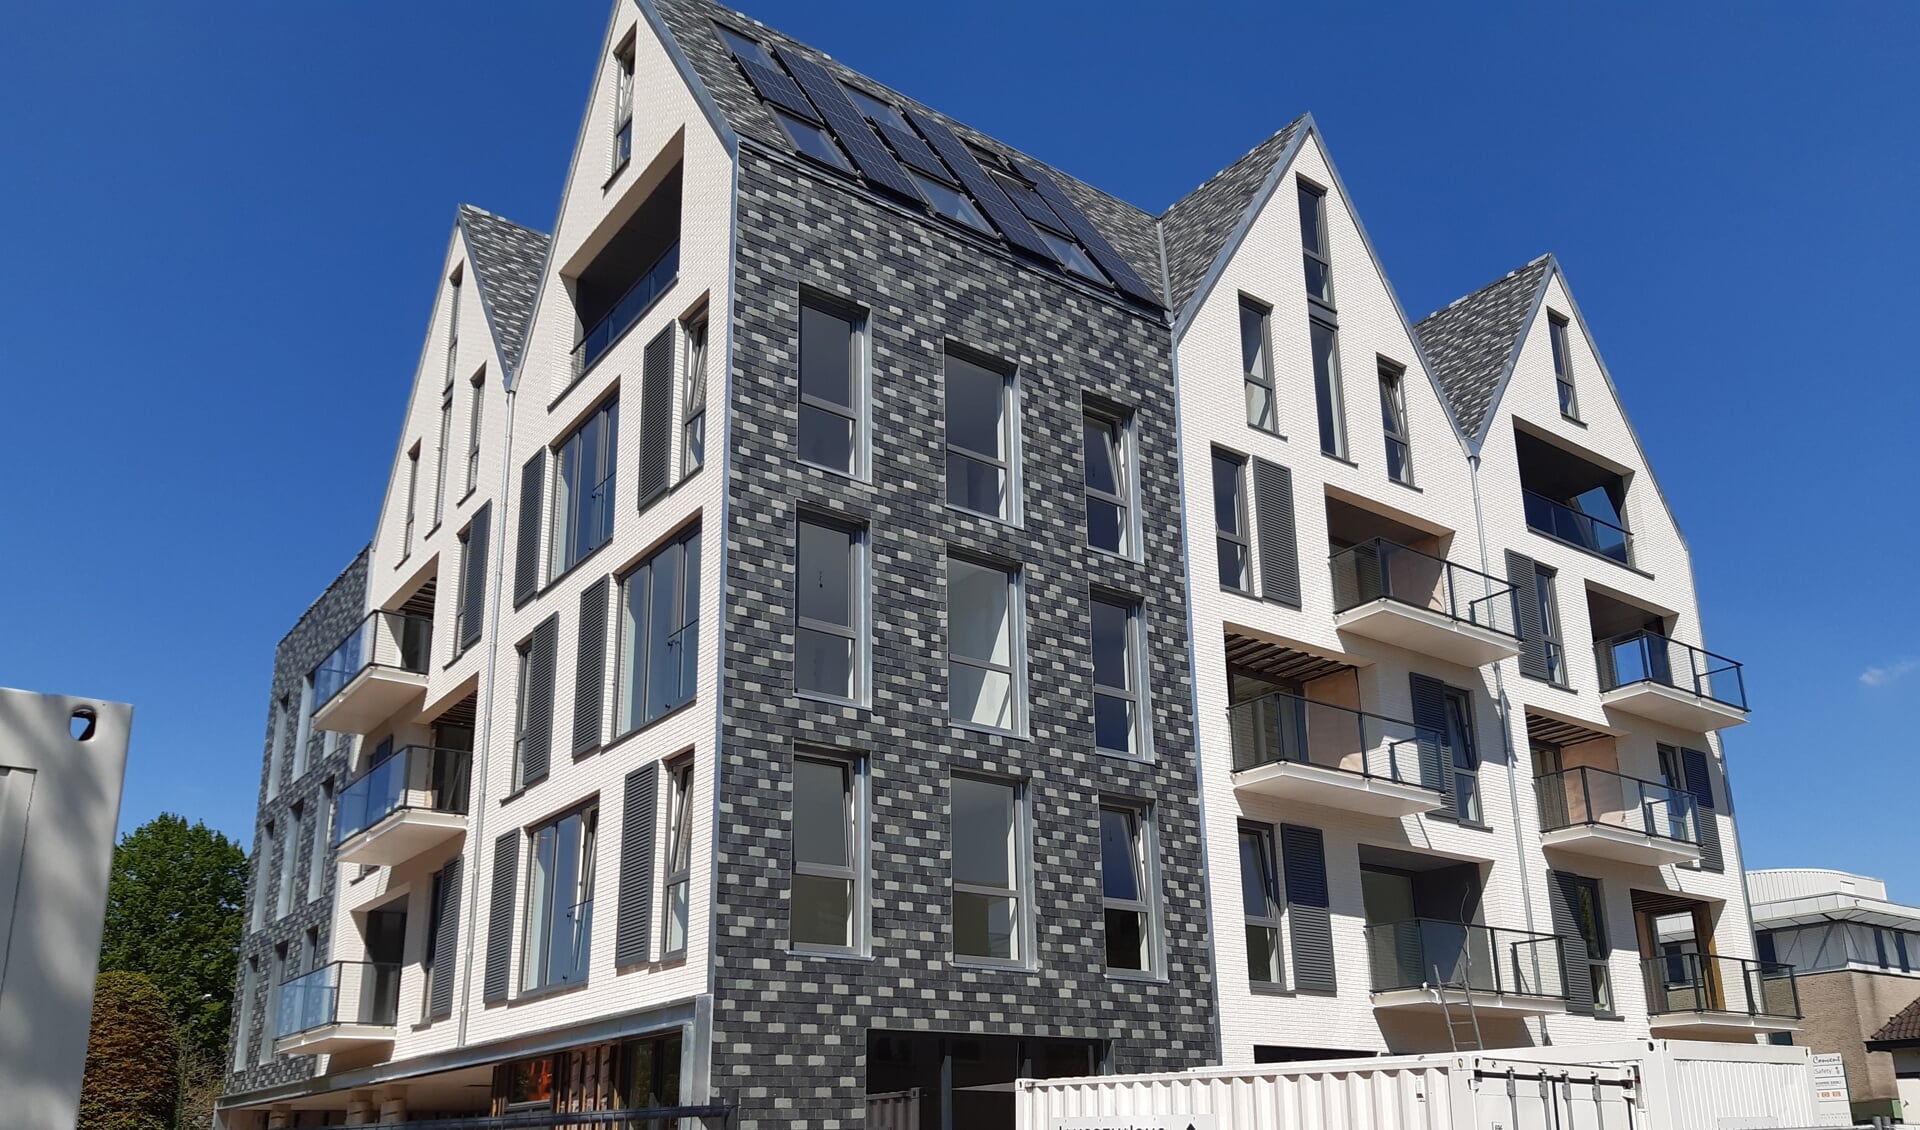 Het nieuwe appartementencomplex 'Hofstede' aan de Hamersveldseweg voldoet al aan eisen van duurzaamheid.